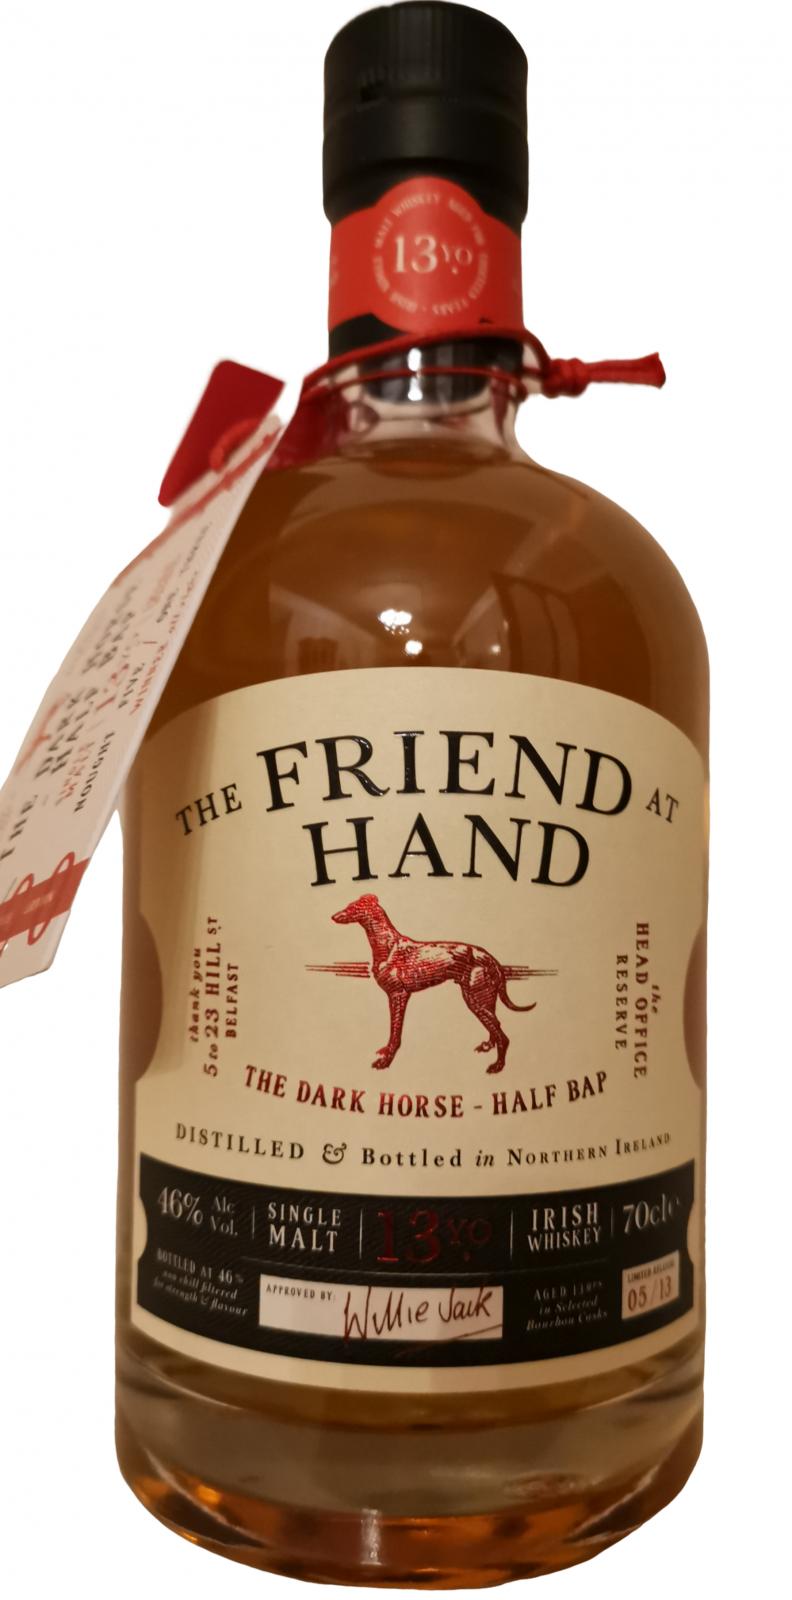 The Friend at Hand 13yo #5 The Dark Horse Half Bap Bourbon casks 46% 700ml